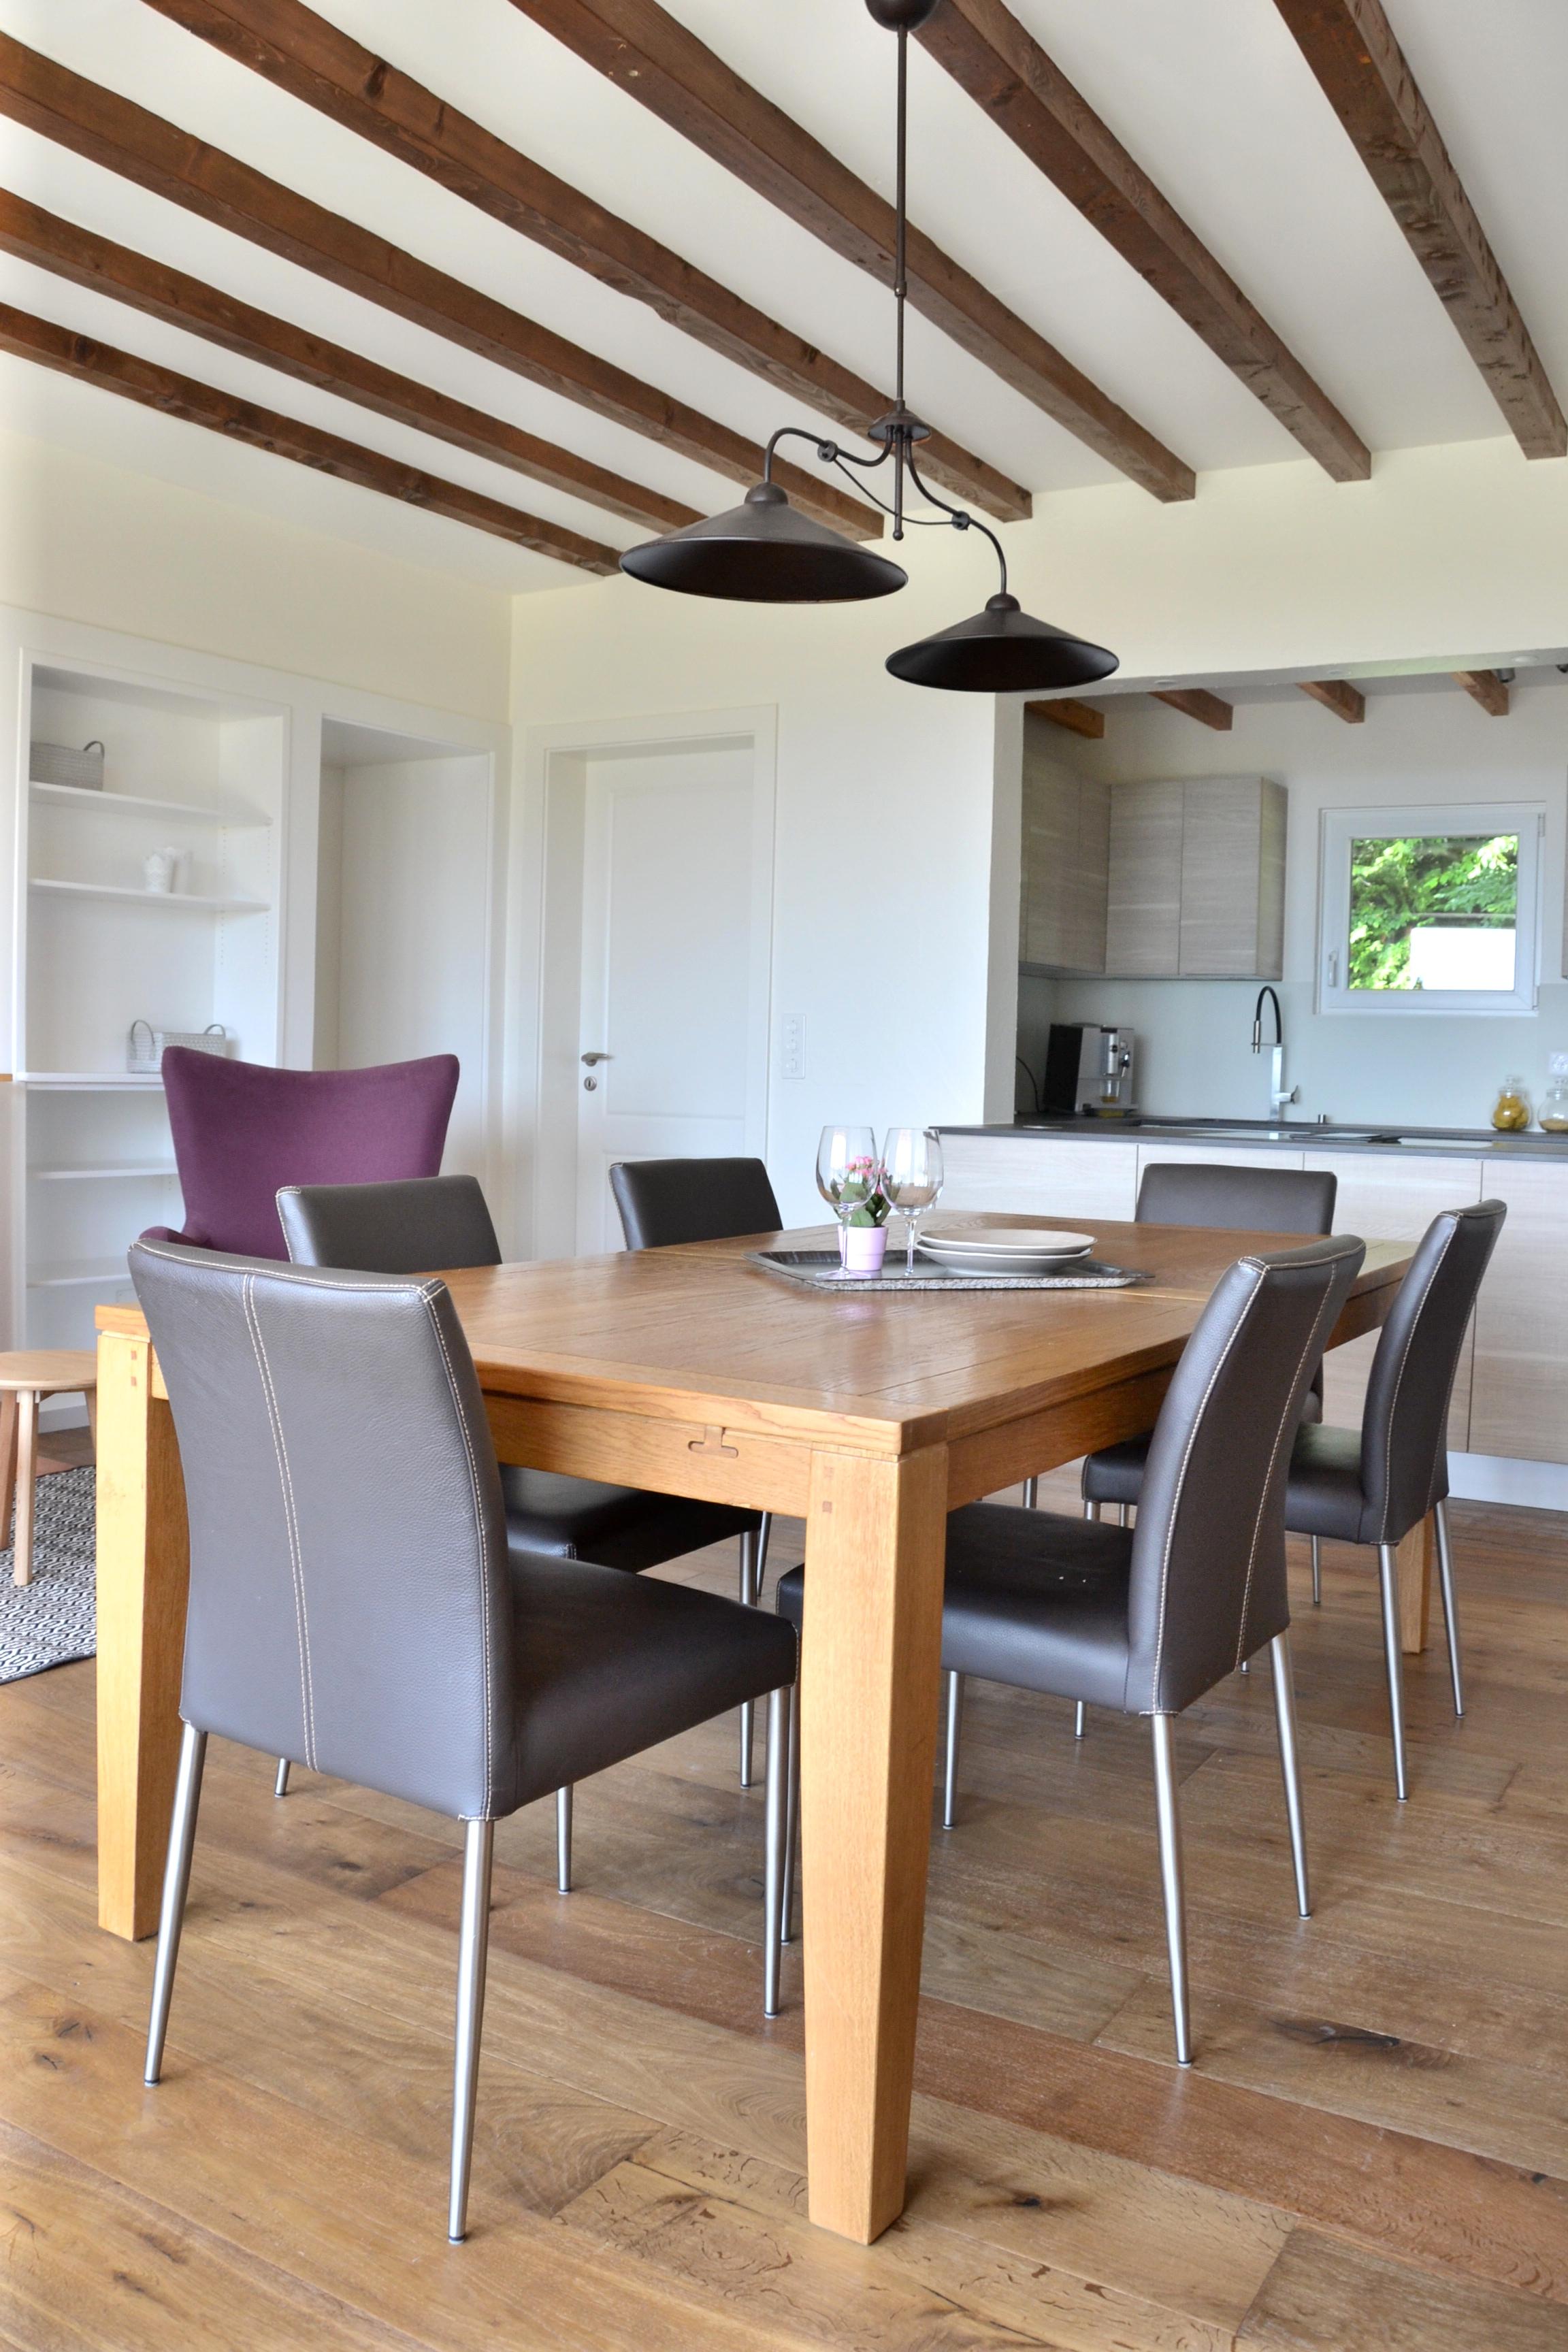 rustic chic provence home #küche #wohnzimmer #renovierung ©Severine Piller Design